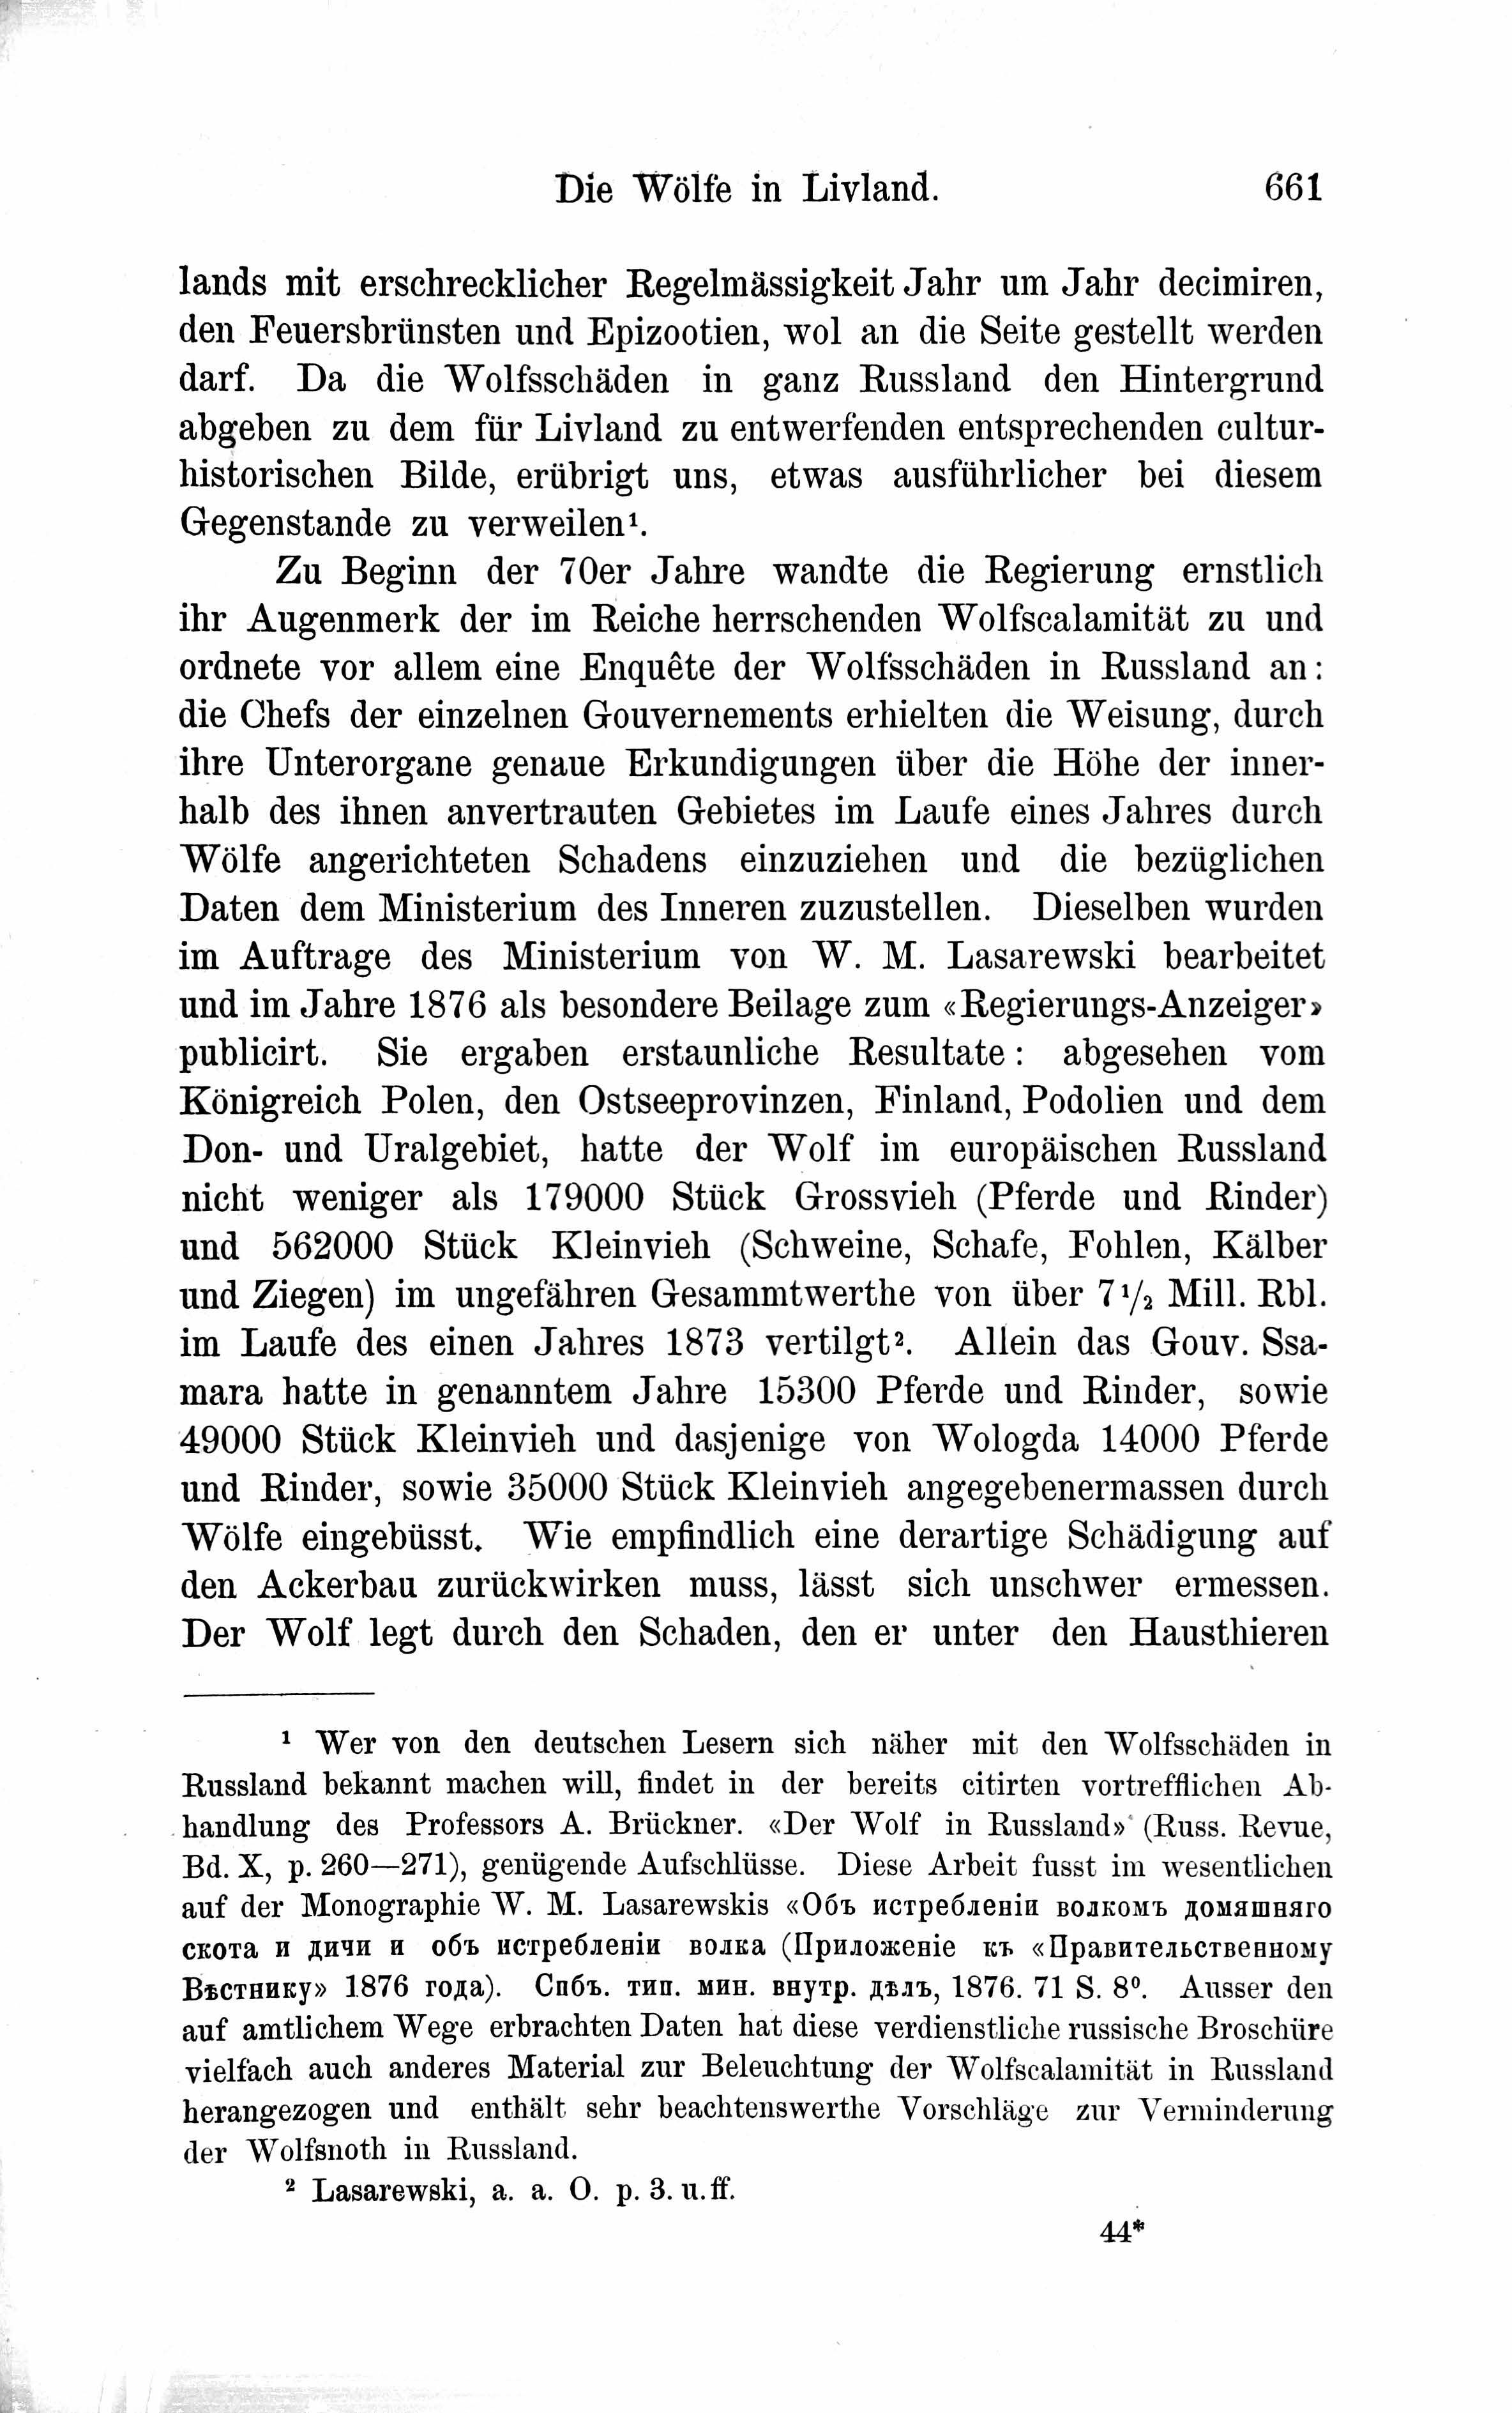 Die Wölfe in Livland (1882) | 3. Основной текст